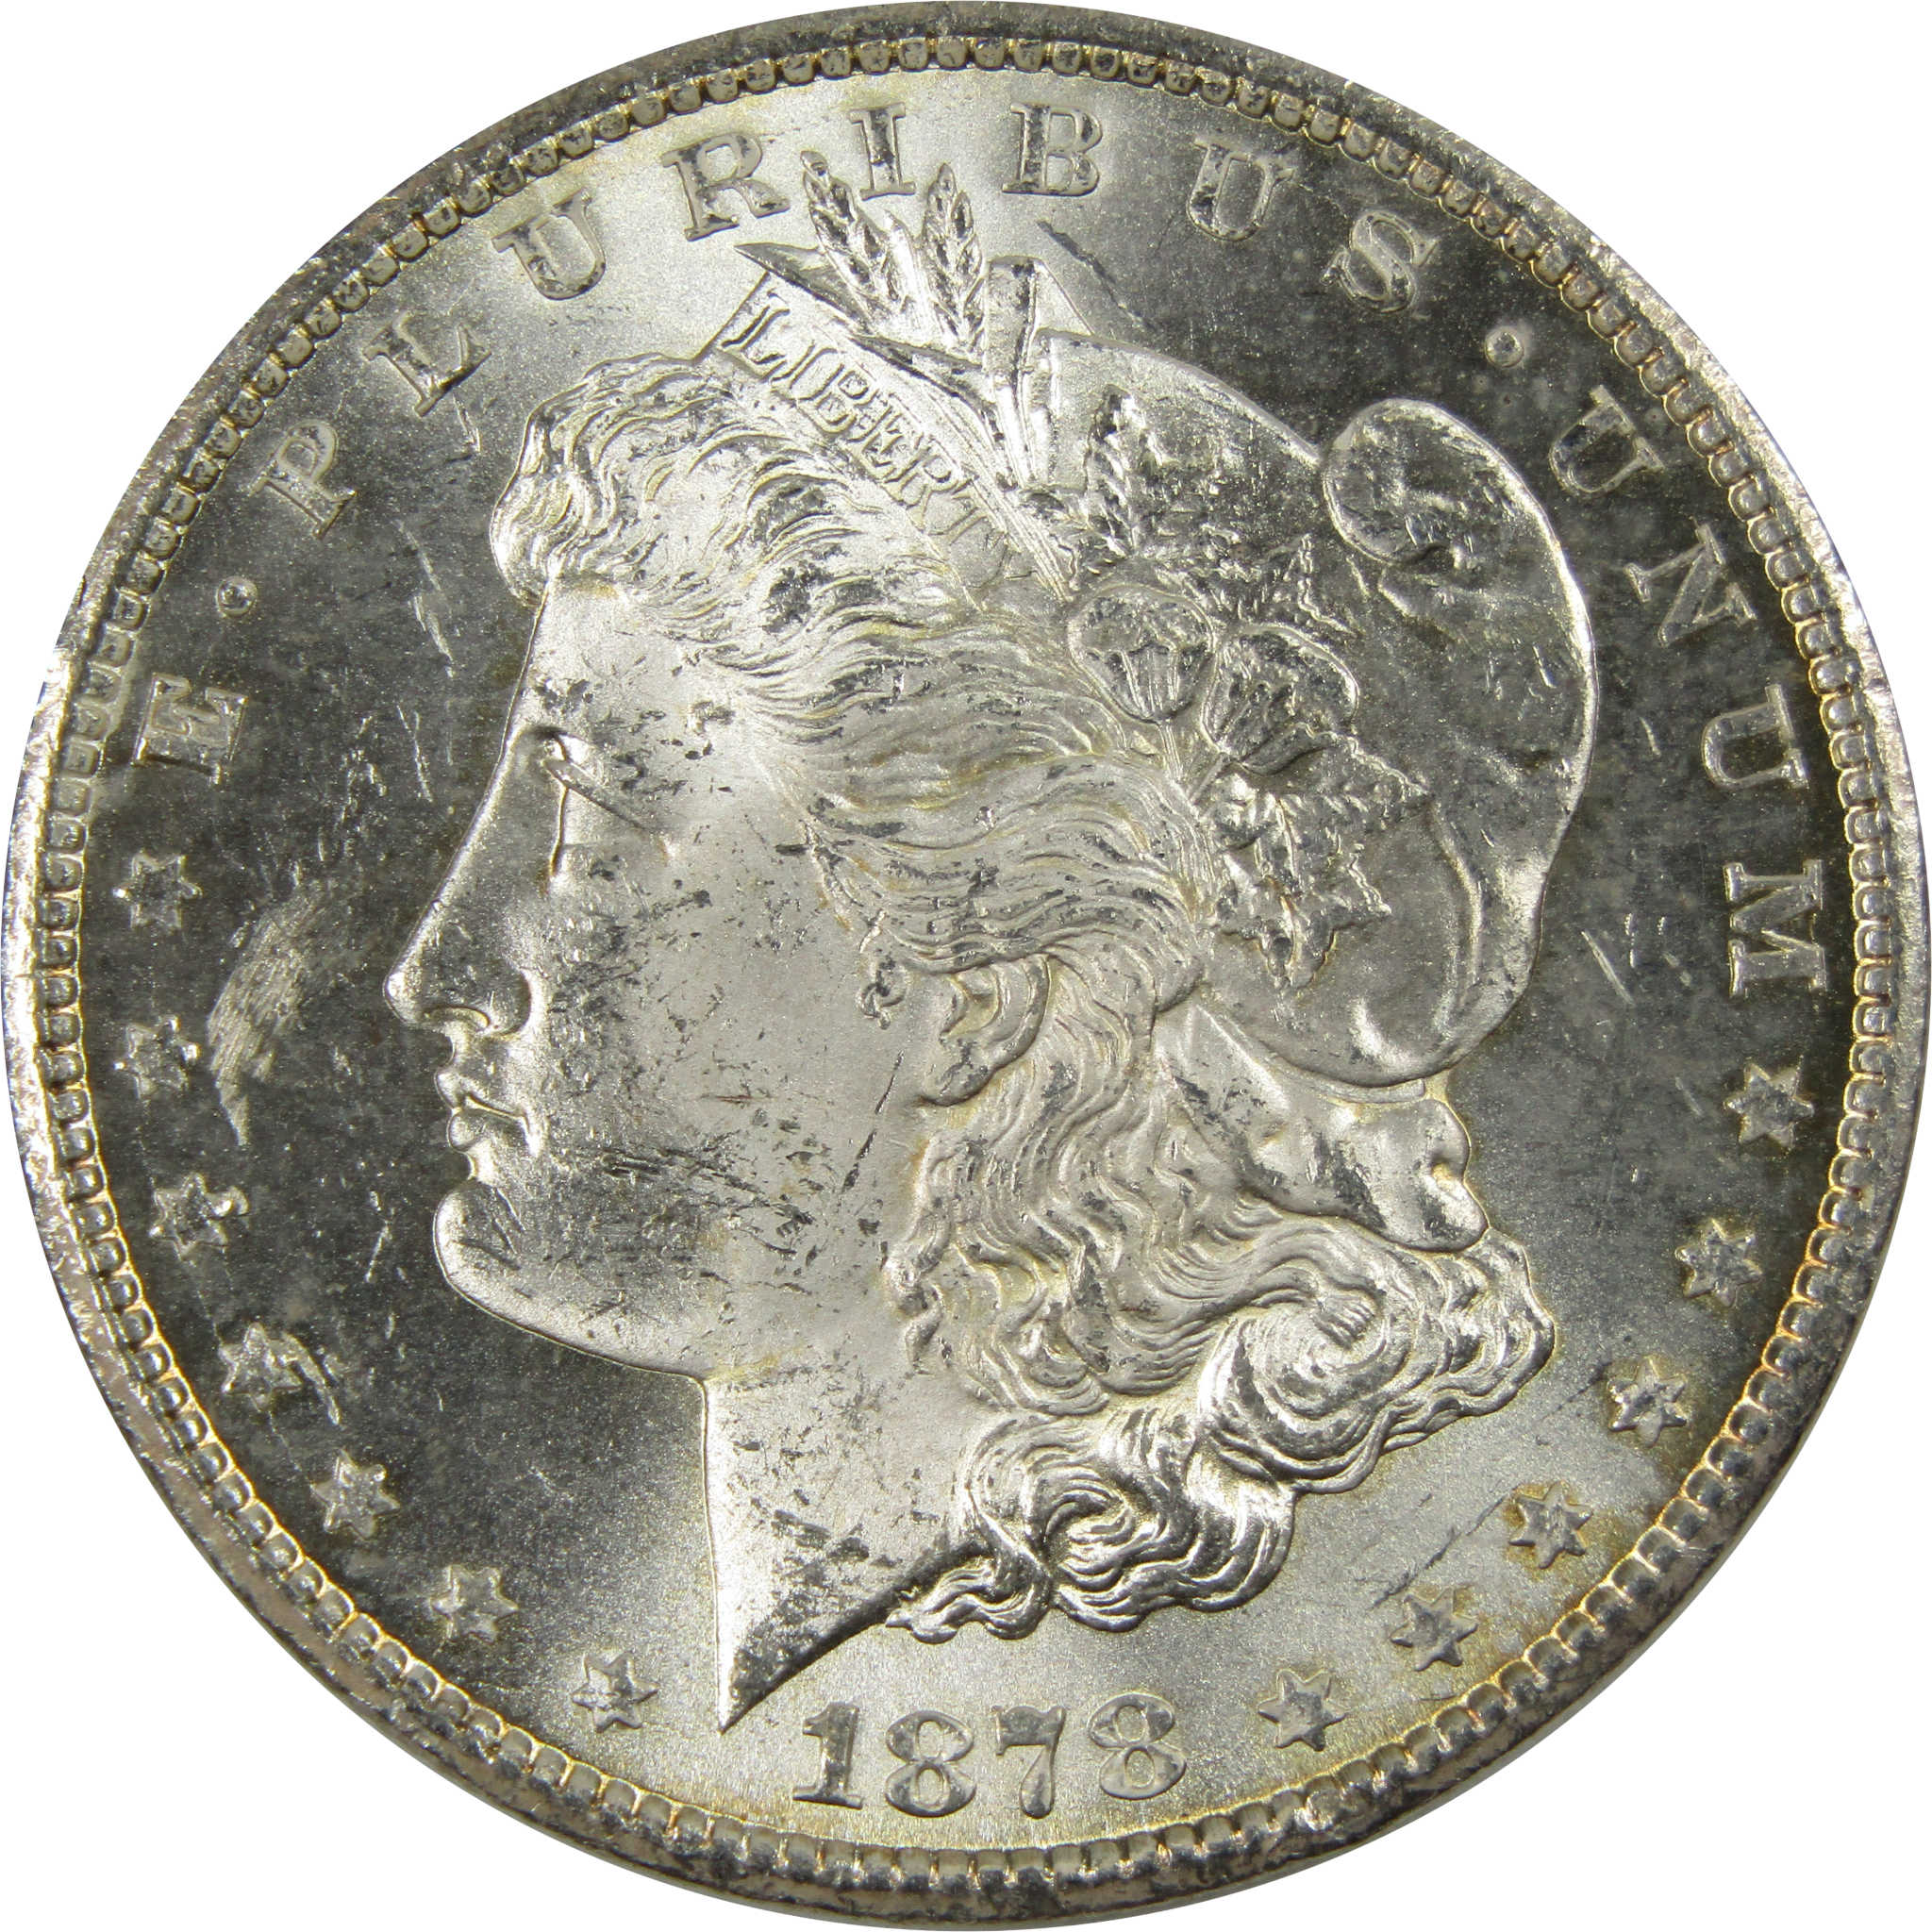 1878 CC Morgan Dollar BU Uncirculated 90% Silver $1 Coin SKU:I7790 - Morgan coin - Morgan silver dollar - Morgan silver dollar for sale - Profile Coins &amp; Collectibles